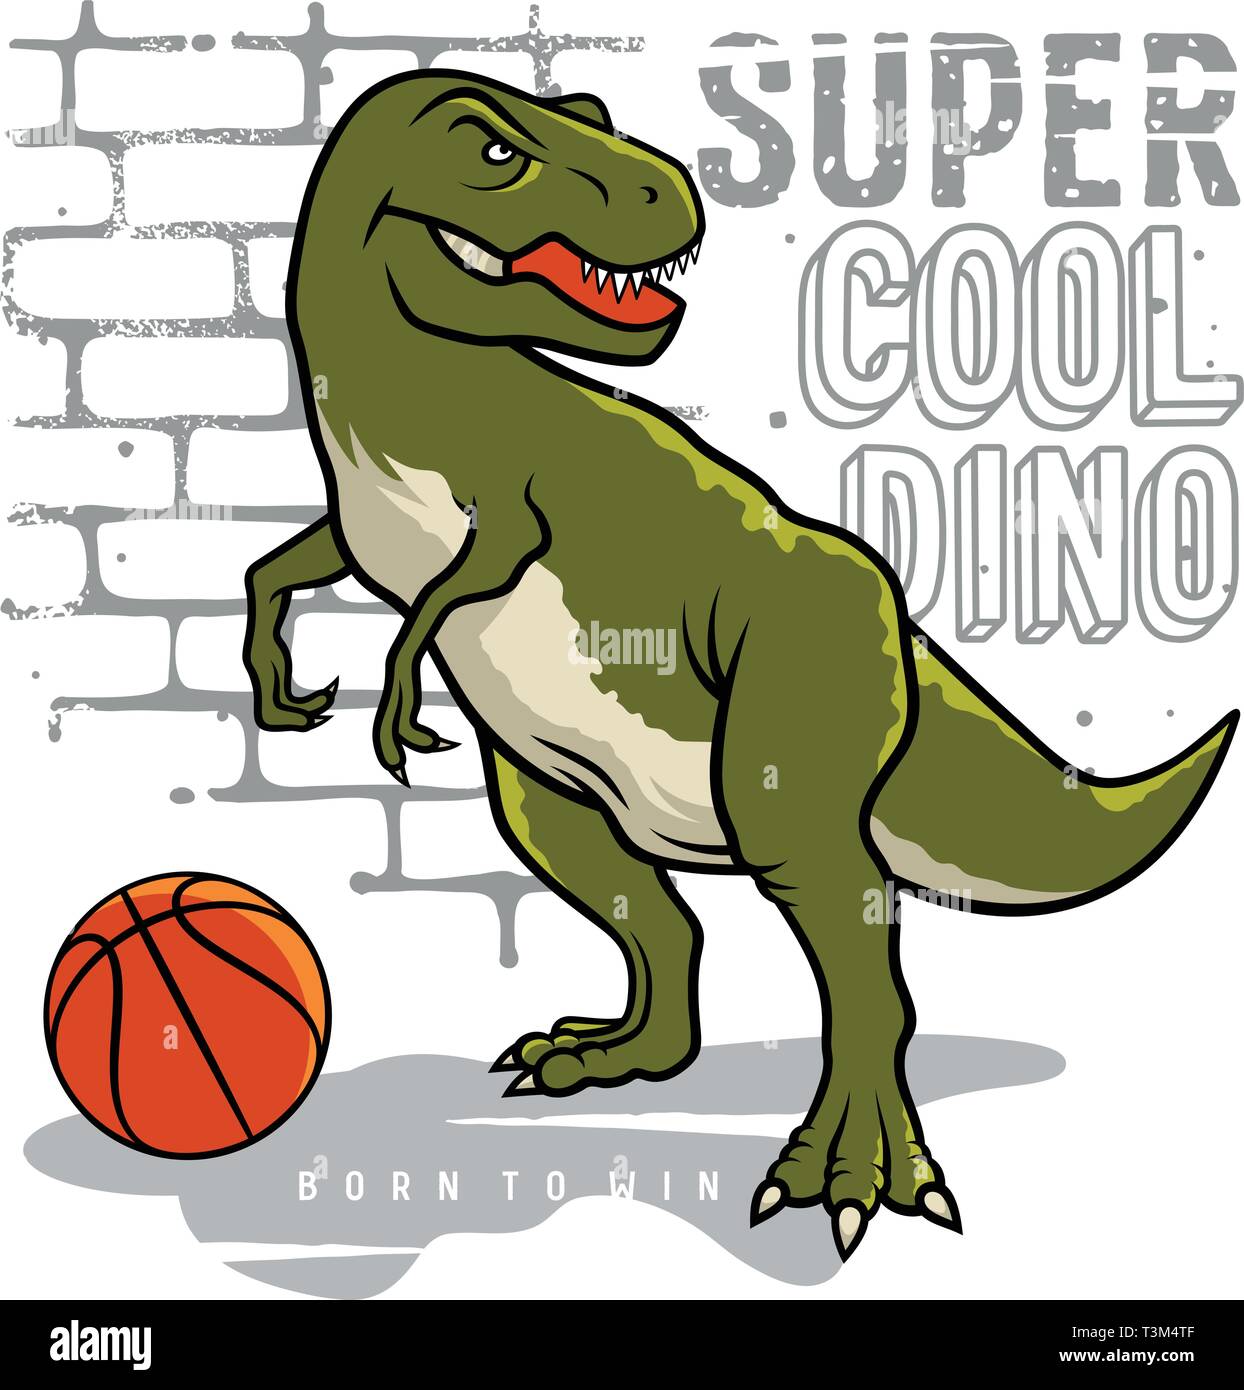 El dinosaurio y el eslogan de la tipografía para T shirt design.  Tiranosaurio Rex jugar al baloncesto en el fondo de la pared de ladrillo.  Athletic graphic tee. Vectores Imagen Vector de